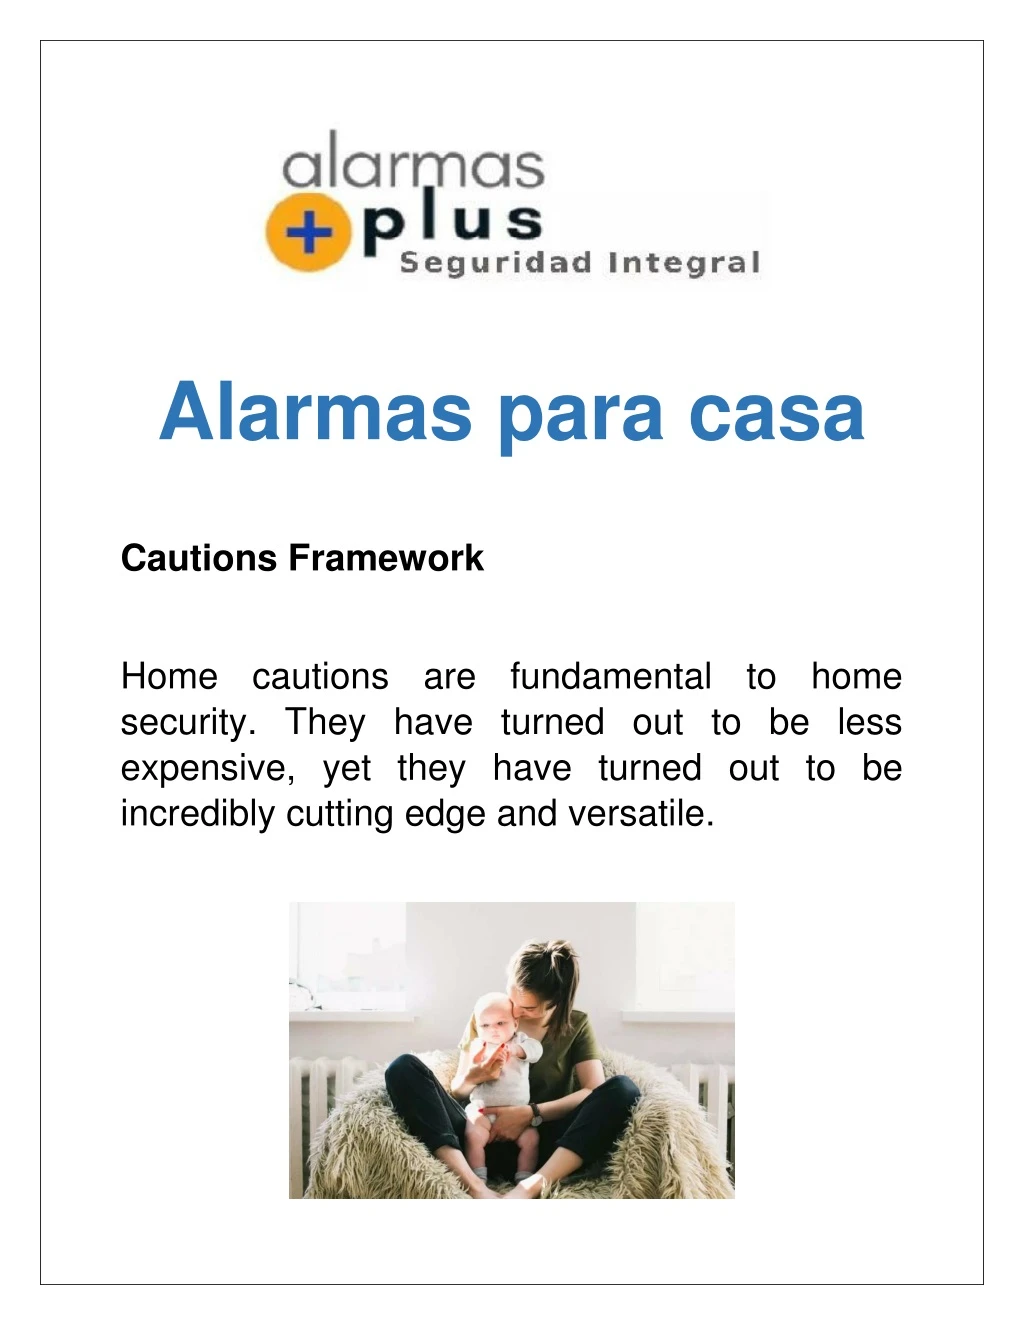 alarmas para casa cautions framework home